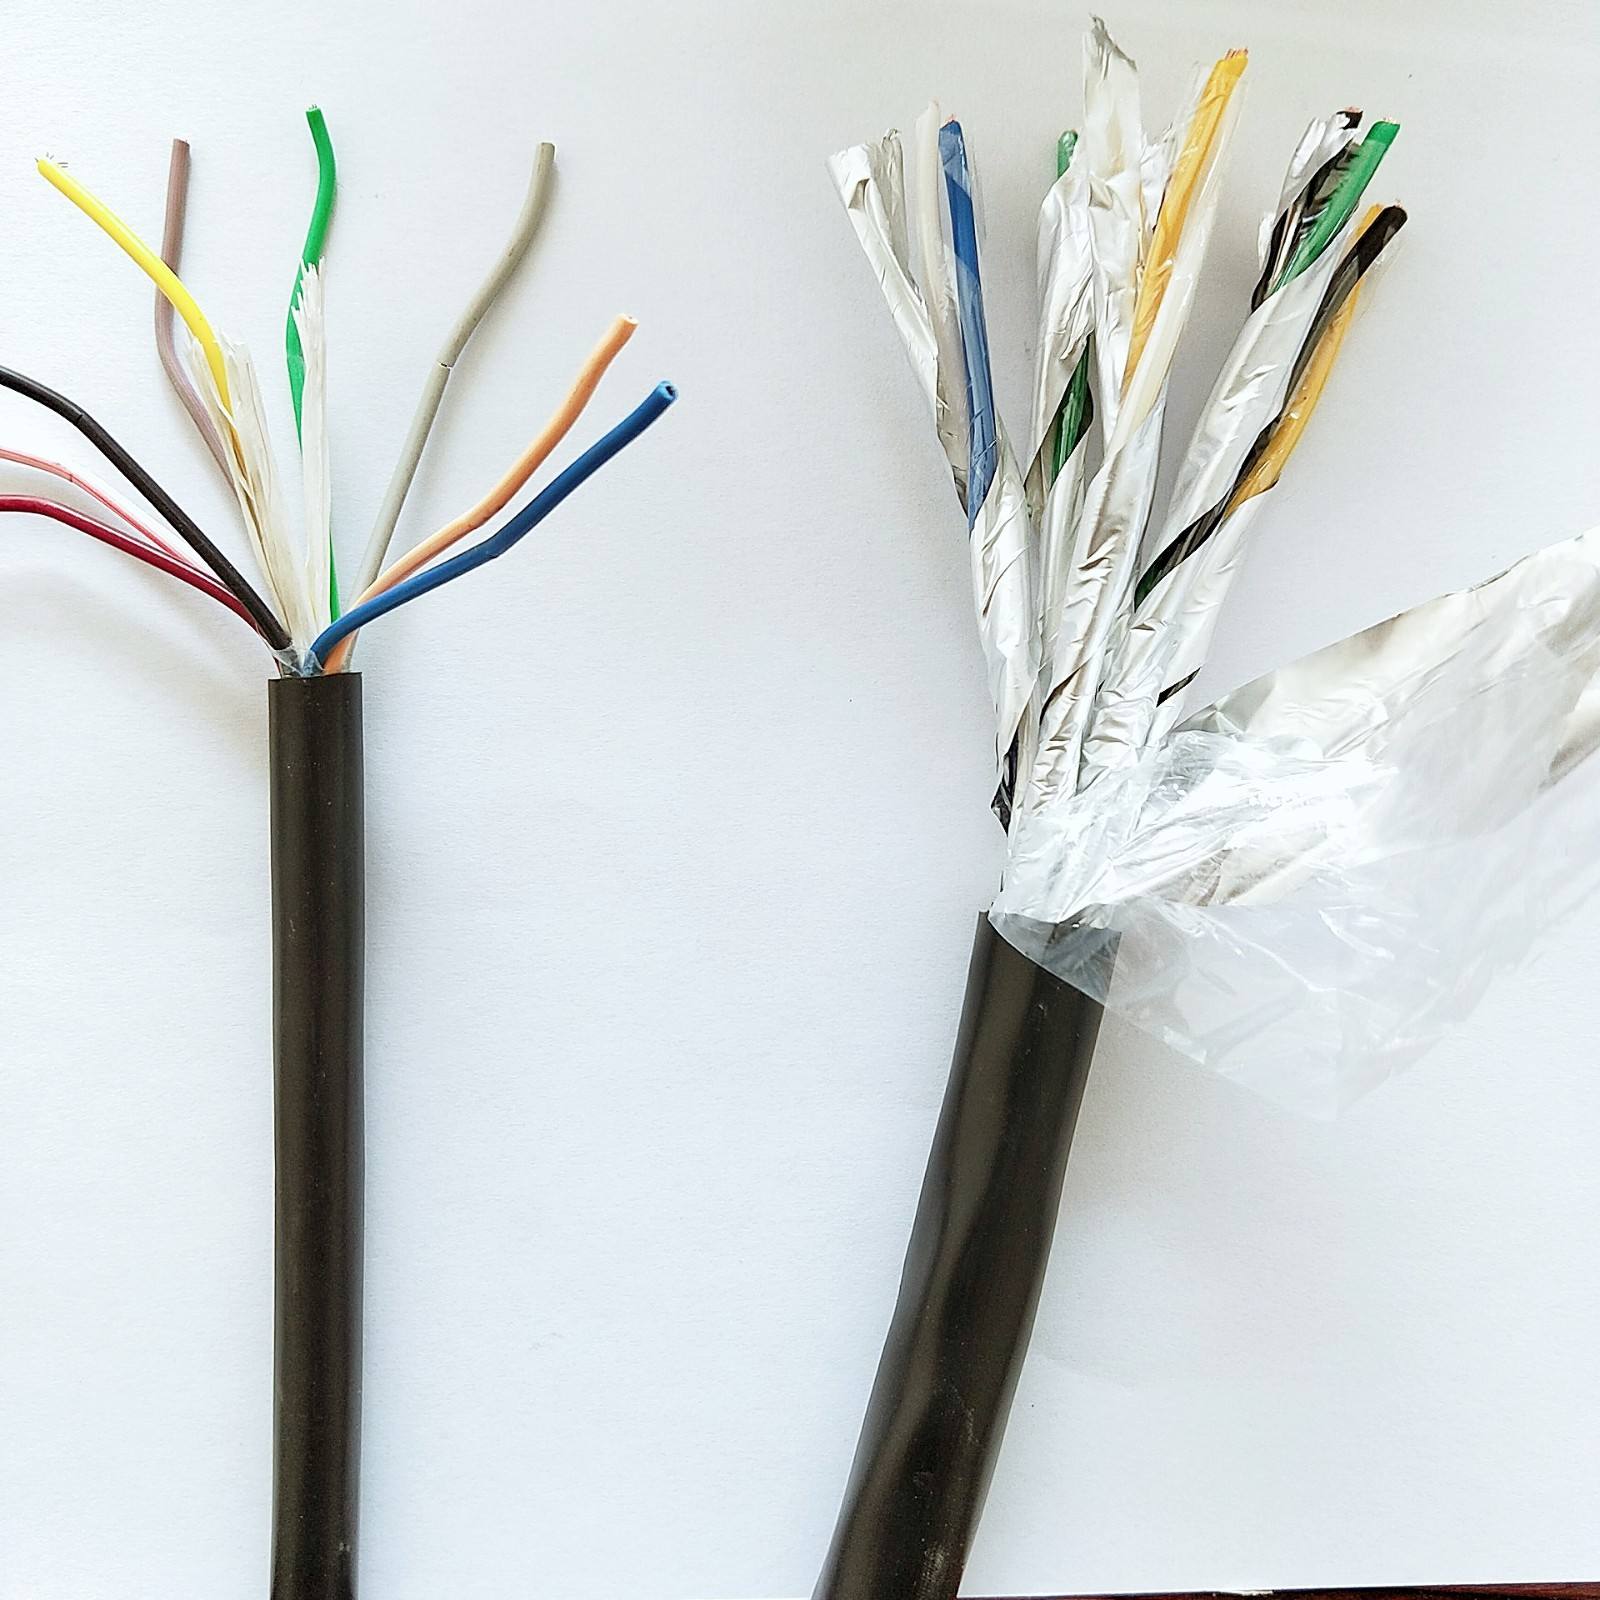 耐高温控制电缆 ZR-KFFRP23 3X35+1X16 高温控制电缆 高温计算机电缆